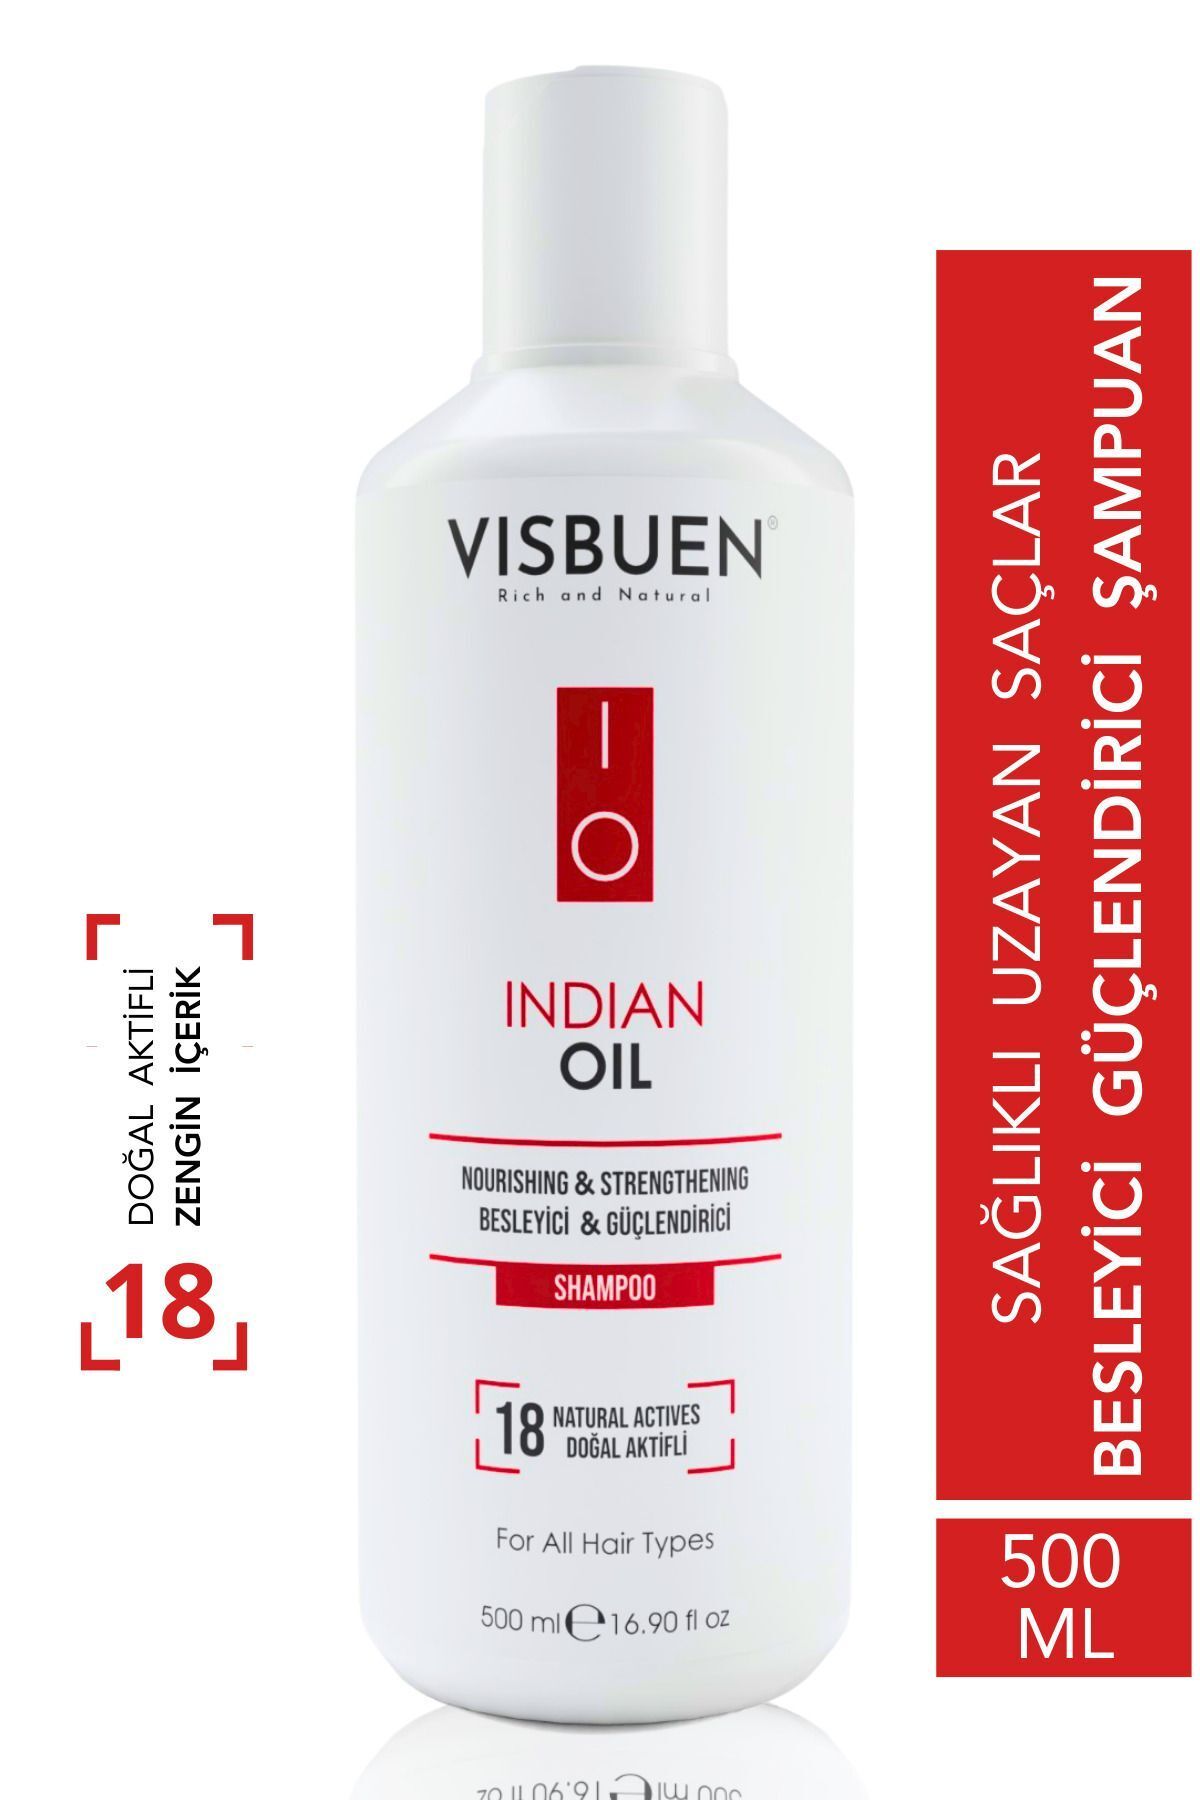 Visbuen Hint Yağı 18 Doğal Aktifli Hızlı Saç Uzatma Ve Besleyici Güçlendirici Etkili Şampuan